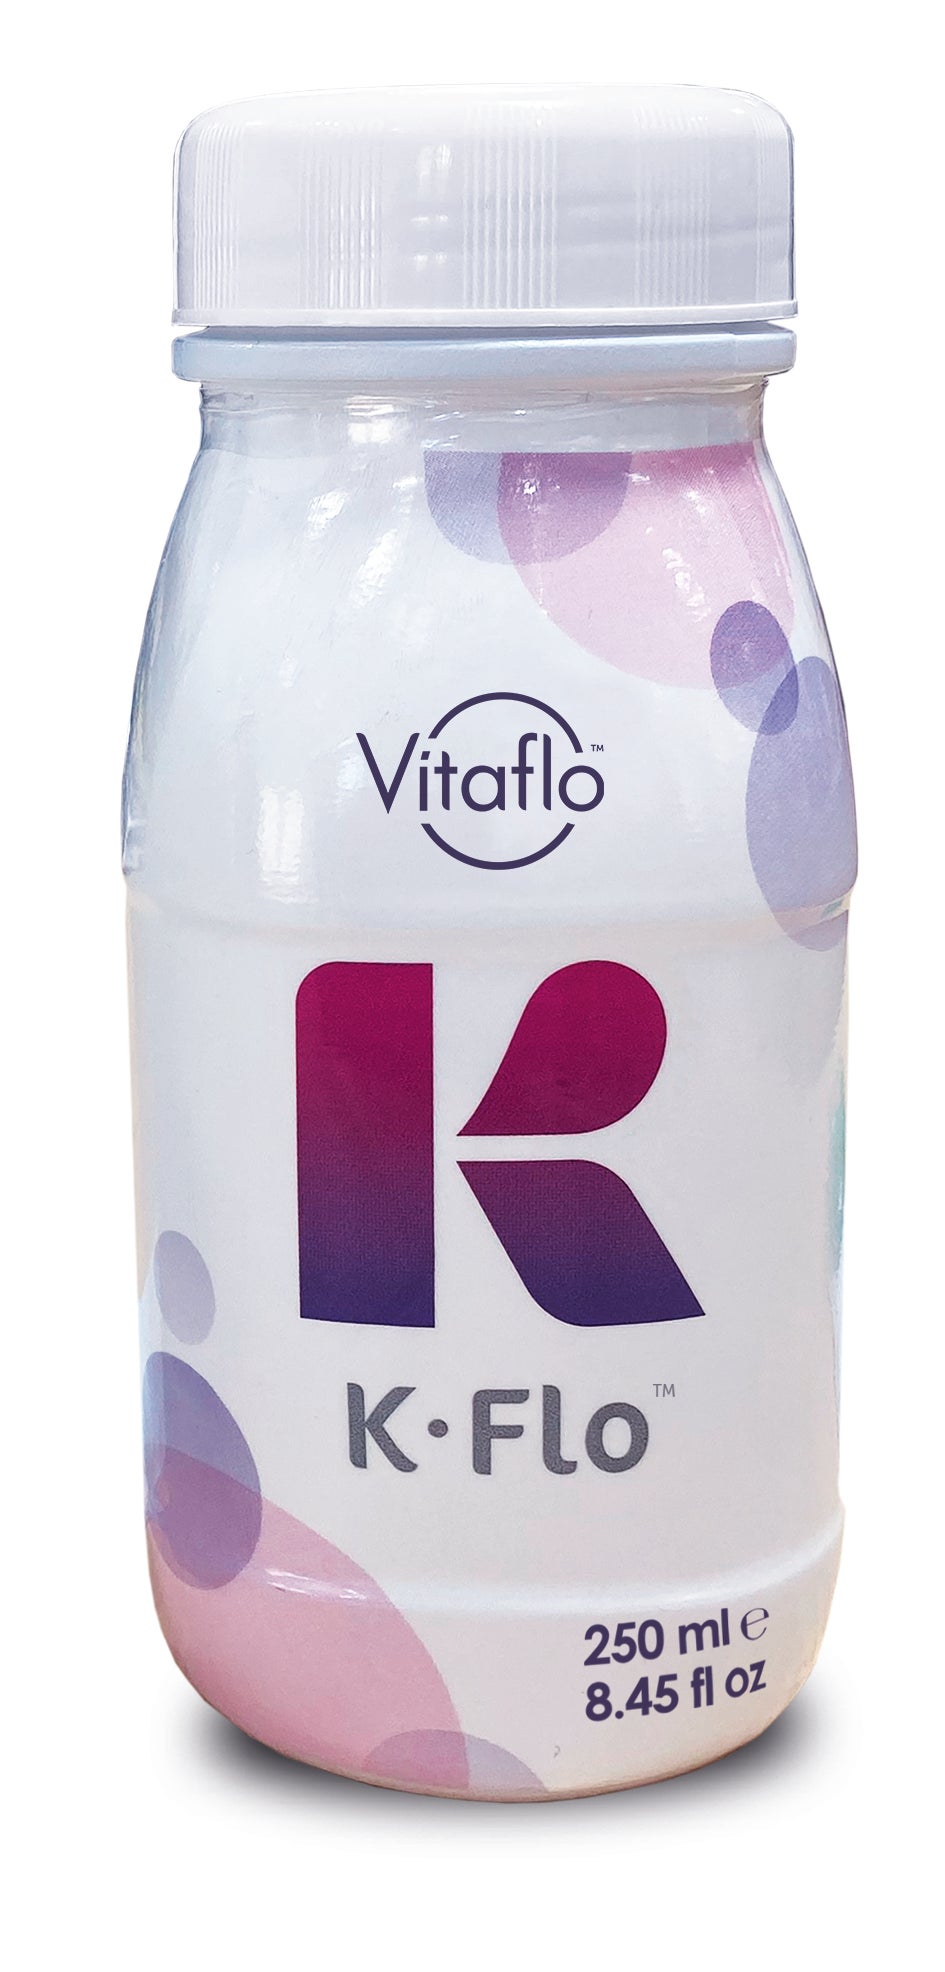 Bottle of K.Flo